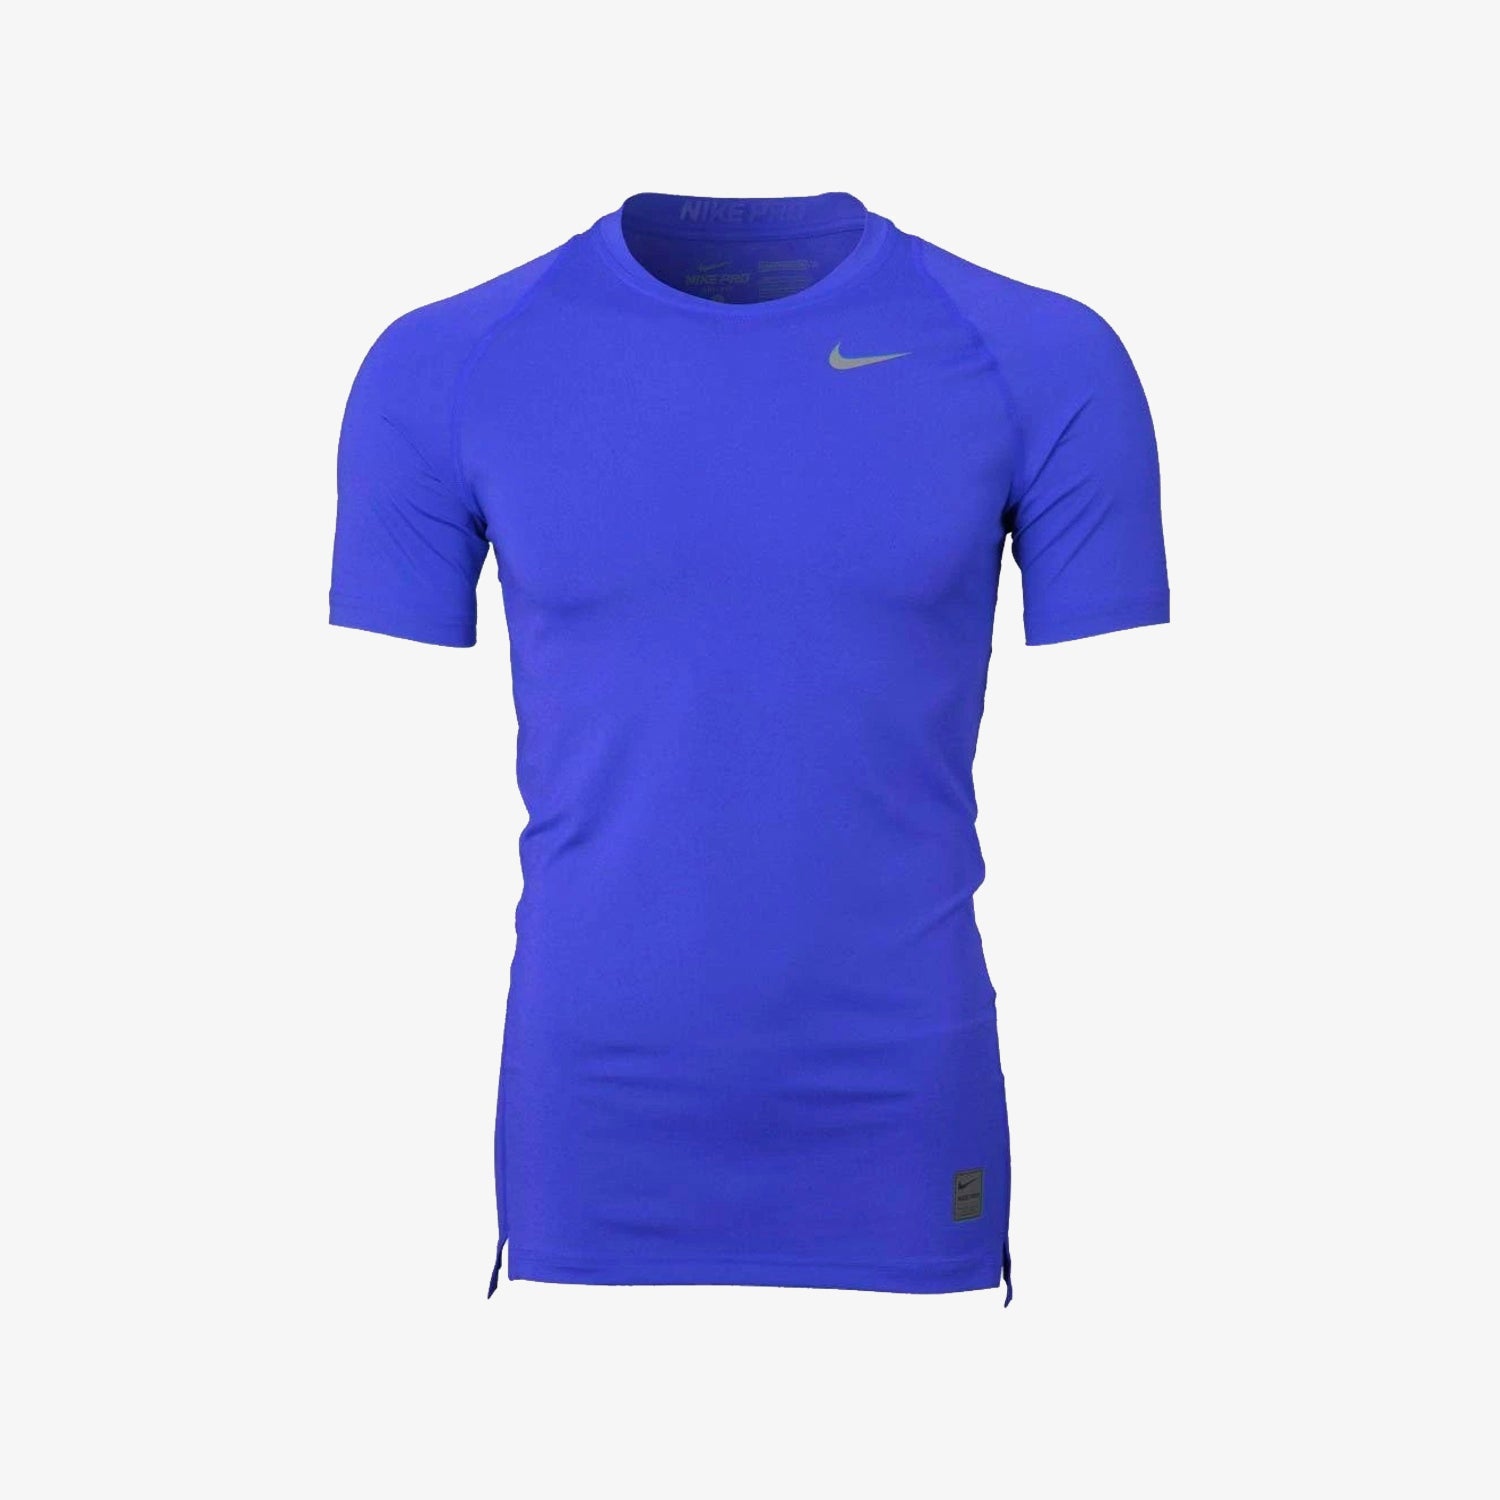 Nike Pro Men's Compression Short-Sleeve